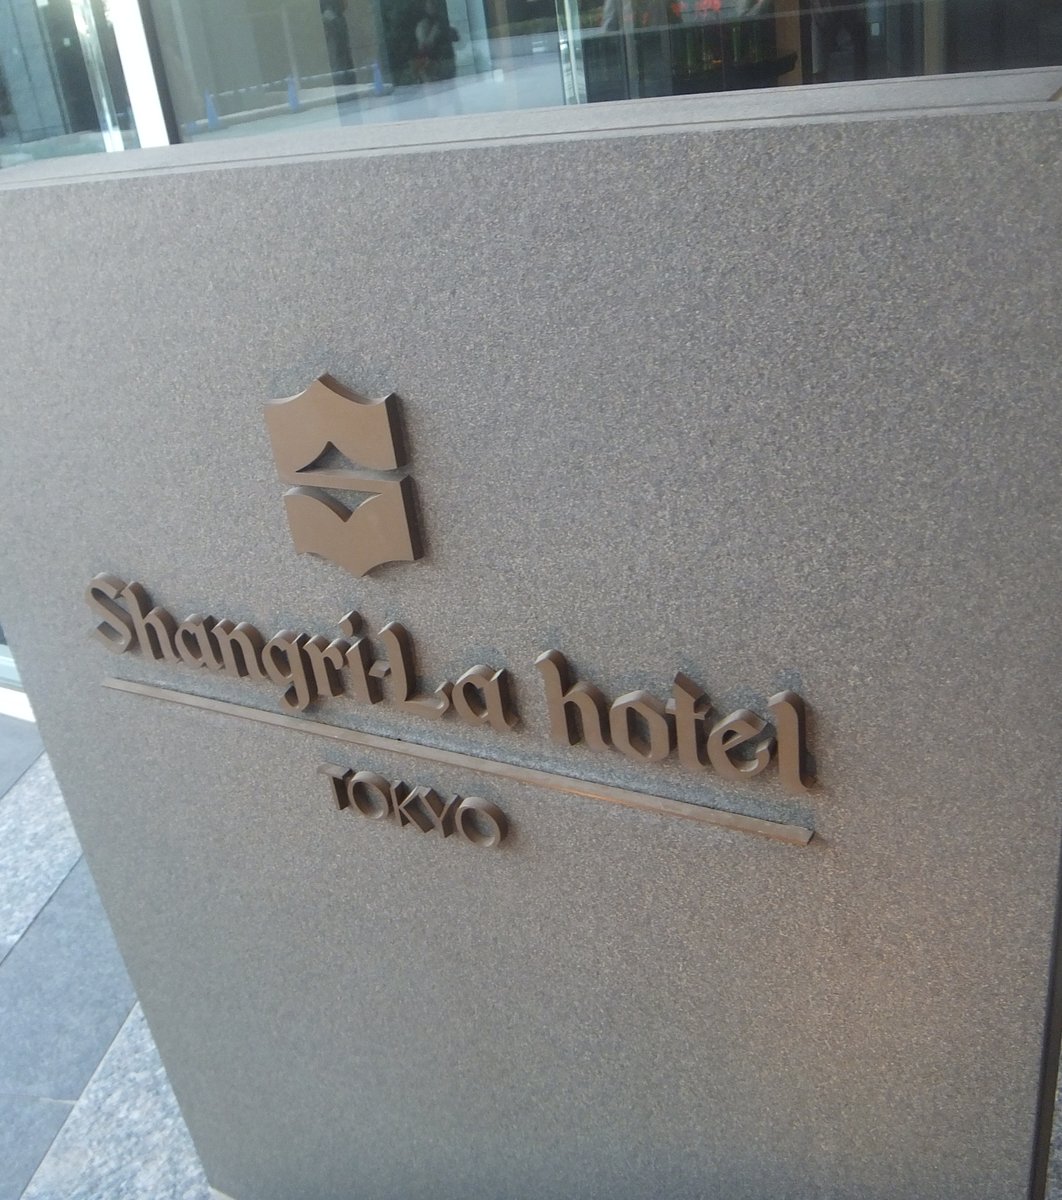 シャングリ・ラ ホテル 東京